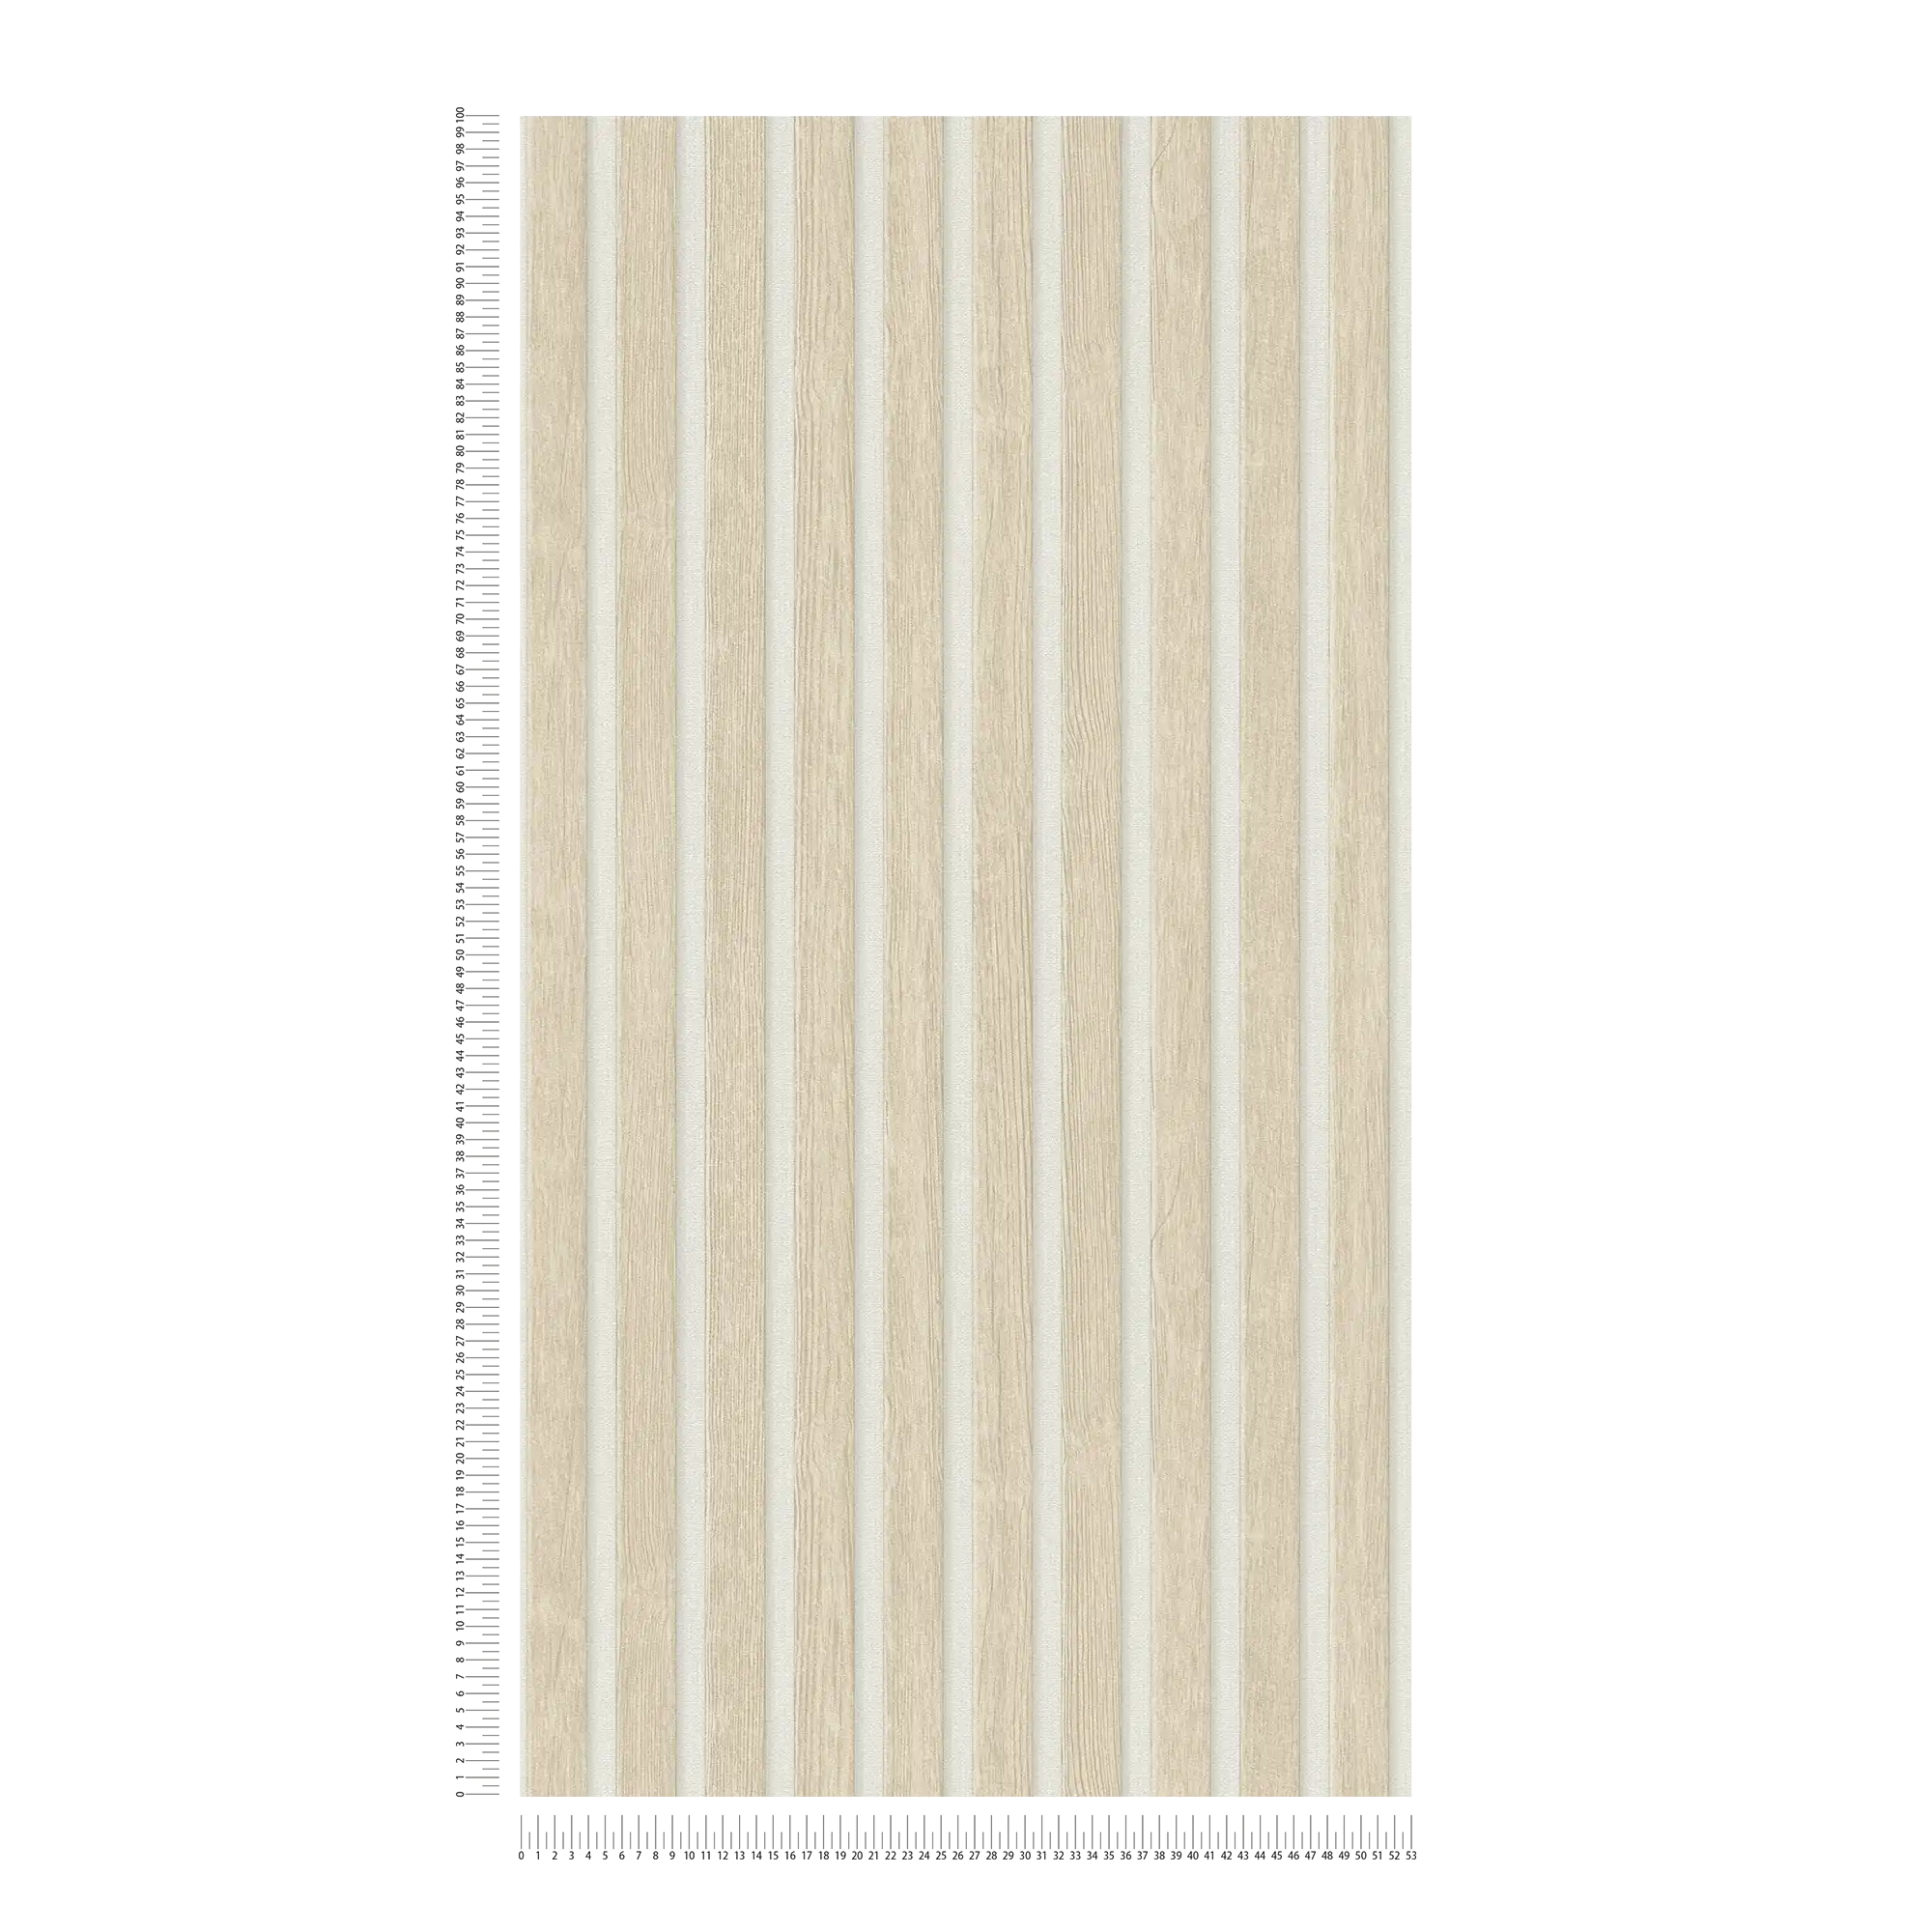             Papier peint bois imitation panneau acoustique - beige, blanc
        